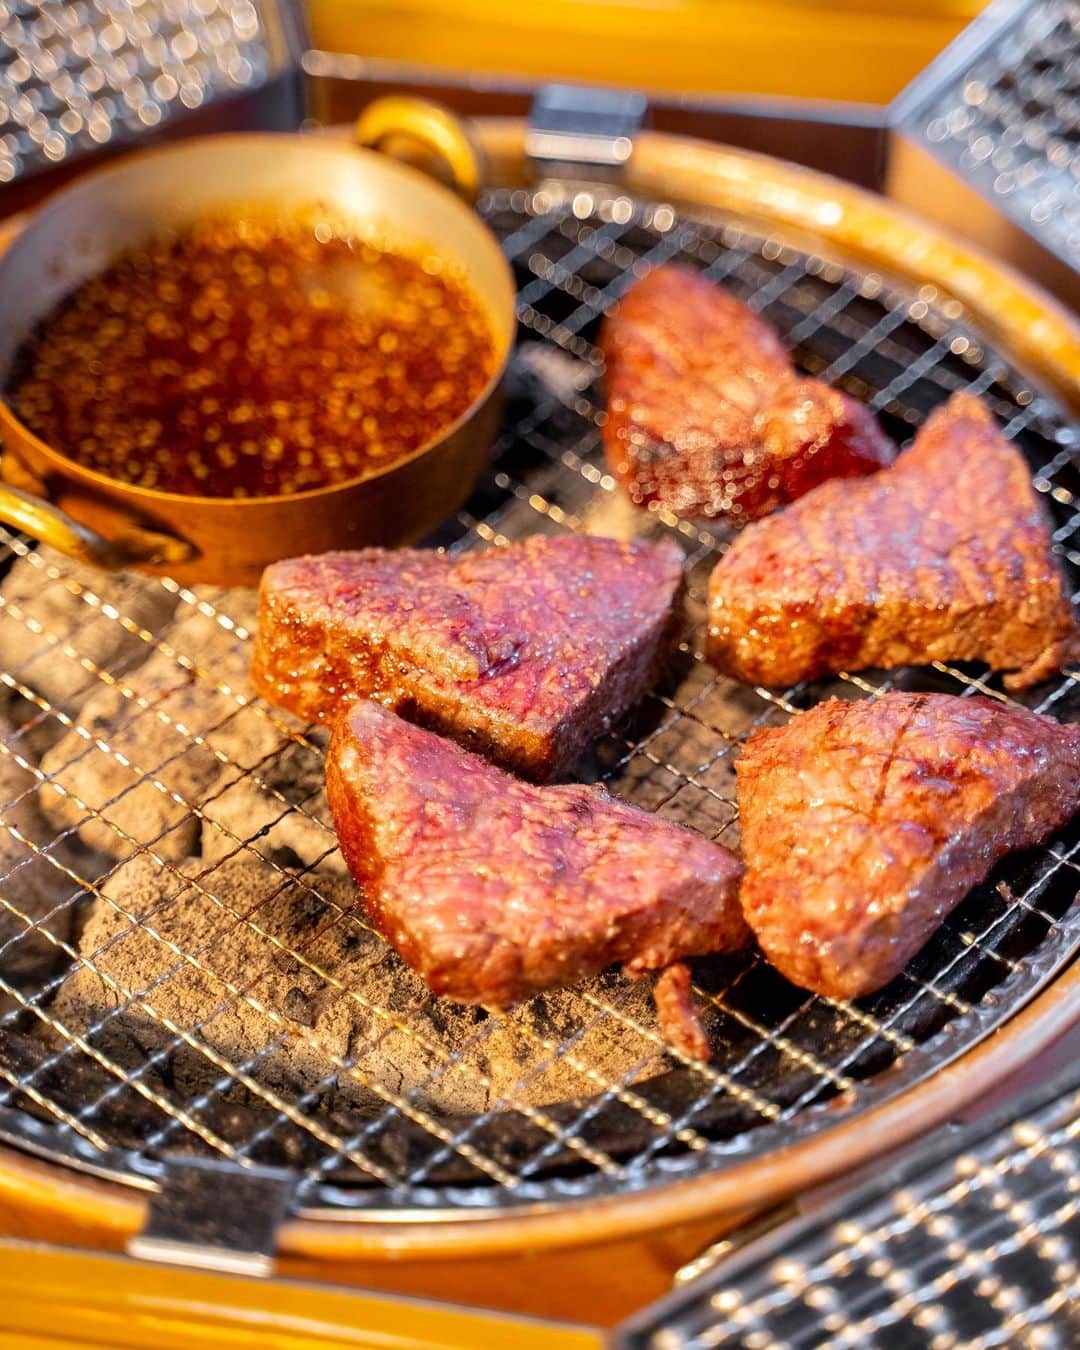 ナゴレコさんのインスタグラム写真 - (ナゴレコInstagram)「＼NEW OPEN🎉焼肉を“くぐらせて”食べる！京風スタイルでいただくユニークな大衆焼肉店🥩／  子どもから大人まで楽しめる“焼肉”。 焼肉といえば、焼いたお肉にタレやお塩など好みの味付けをしていただくのが一般的なイメージですよね💭  実は、関西・京都の地では独特な焼肉文化があり、焼いたお肉を“洗いダレ”という透明なタレにくぐらせていただく食べ方が根付いているのだそう🥢  今回は、名古屋で京風スタイルの焼肉が楽しめるユニークな大衆焼肉店をご紹介✨  京都のブランド牛を使った豪快な塊肉や種類豊富なユッケメニューなどにも注目です👀💕  👉 @kuguru_takahashi  今回ご紹介するのは、栄にある大衆焼肉店「炭火焼肉 くぐ琉（くぐる）」さん。 地下鉄東山線・名城線 栄駅から徒歩5分ほどで到着👟  お店は飲み屋が多く立ち並ぶ錦エリアに位置していることもあり、なんと24時間営業🏮  1軒目はもちろんのこと、2軒目、シメの3軒目としても気軽に利用できそうですね◎  ●“洗いダレ”でいただく焼肉メニュー  カルビやタンなど、王道の牛メニューから4種類をピックアップ。 牛のほかにも鶏や豚、ホルモンなど焼肉メニューが豊富なくぐ琉さんですが、イチオシは京都のブランド牛「平井牛」を使った牛焼肉🥩  毎月10頭しか出荷されない希少なブランド牛ですが、一頭買いをしているため、平井牛のいろんな部位をリーズナブルな価格で楽しめるのです✨  そして、お店最大の特徴が“洗いダレ”と呼ばれる特製のタレをくぐらせていただく京風の焼肉スタイル🥢 さっぱり&ピリ辛の2種の特製洗いダレにお肉をくぐらせ、香味野菜を合わせて食べると、とっても美味しい💕  ジューシーで柔らかいお肉と香味野菜のシャキシャキ食感が相性抜群です◎  ●スタミナホルモン盛り合わせ  牛ホルモンやセンマイ、レバー、ミノ、てっちゃんなどをおろしニンニクと付け合わせたスタミナアップ間違いなしの一品です🐮 こちらも、ニンニクはもちろんのこと、洗いダレにさっとくぐらせていただくのもおすすめですよ◎  ●インパクト大！テンションが上がる豪快な塊肉メニュー  タン、ロース、ハラミを豪快に塊ごといただくことができるこちらのメニュー🔥 写真で見る以上にインパクトがあり、運ばれてきた際は思わず声をあげてしまうほど！  コクのある濃いめの特製ダレにつけ2度焼きすることで、お肉の香ばしさがアップ💕 ご飯と合わせて食べたくなる、ヤミツキになるお味！  ●全12種類！個性的で種類豊富な生肉メニュー くぐ琉さんでは、生肉を扱ったメニューもとても豊富✨ ユッケだけでも10種類あり、他ではあまり耳にしない珍しいユッケも楽しめます。  中でも「塩ミルフィーユユッケ」は、ネギのシャキシャキ感と卵黄のトロッと感が楽しめるおつまみにぴったりの一品💕  辛味のある「チャンジャユッケ」もついついお酒がすすんでしまう美味しさです🍺 くぐ琉さんは京都のお酒も豊富なので、ぜひそちらも合わせて注文してくださいね！  ●茶そば ツルッとした喉越しで、お腹が膨れていてもさっぱりといただける茶そばは〆にピッタリ🥢  デザートにはもなかを使ったアイスなどもあり、メニューの随所に京都らしさが感じられました👘  ／ 24時間営業の大衆焼肉店「炭火焼肉 くぐ琉」さんで京都の焼肉文化を体験しよう🥩✨ ＼  洗いダレを使った京風スタイルの焼肉を中心に、豪快な塊肉や種類豊富なユッケ、京都を感じるサイドメニューまでたっぷりとご紹介しました✨  どこを切り取ってもこだわりを感じられるものばかりで、驚きの連続でした！ 京都の焼肉文化を名古屋で気軽に体験できるのは嬉しいですね🌿  みなさんもぜひ、「炭火焼肉 くぐ琉」さんで京風スタイルの焼肉を楽しんでみてください🥩  #ナゴレコ で、あなたの投稿をリポスト！ webサイト「ナゴレコ」もチェックしてね👀  ‥‥‥‥‥‥‥‥‥‥‥‥‥‥‥‥ PR #炭火焼肉くぐ琉」9月28日 12時39分 - nagoya_food